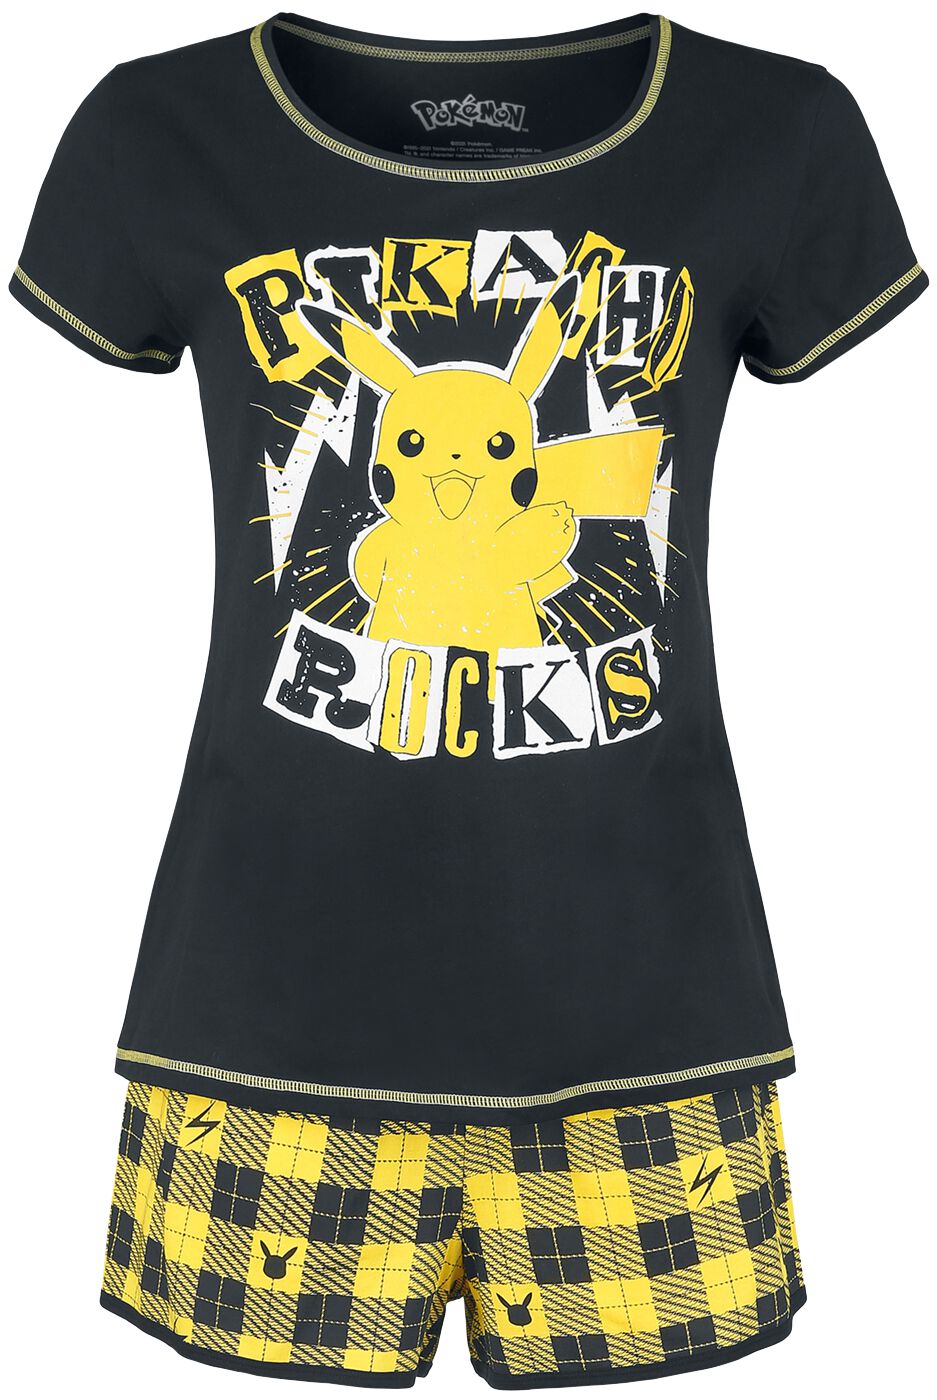 Pokémon Pikachu - Rocks Schlafanzug schwarz gelb in S von Pokémon